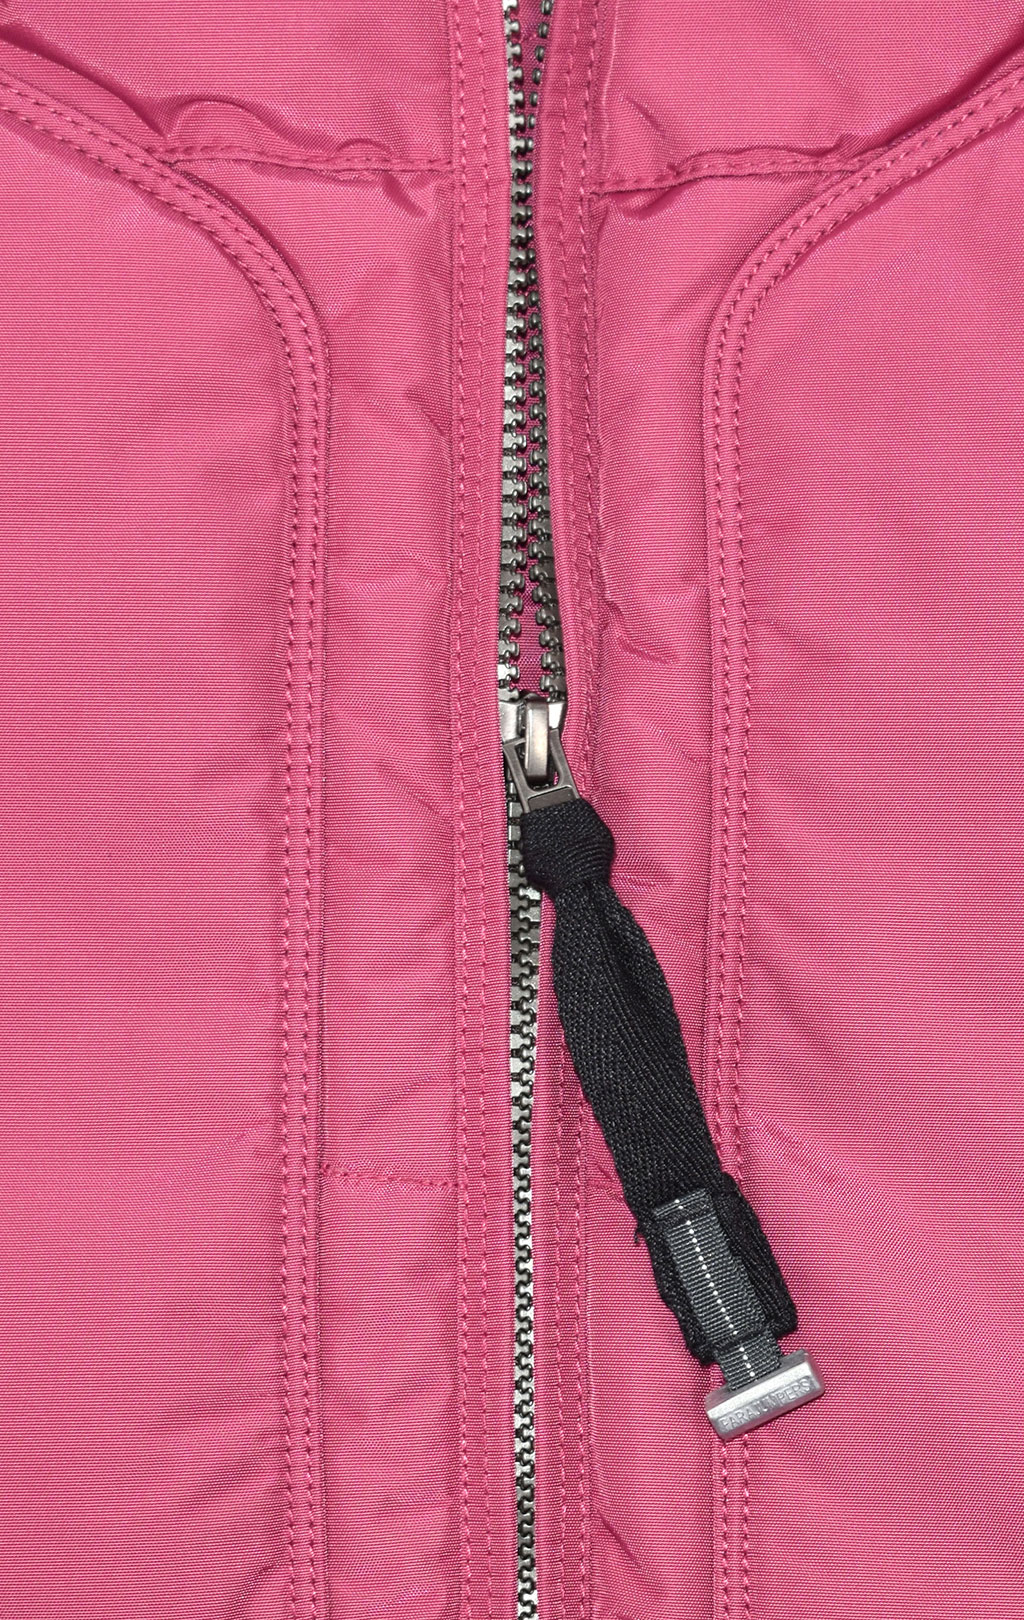 Женская куртка-пуховик PARAJUMPERS LONG BEAR FW 19/20 maroon 